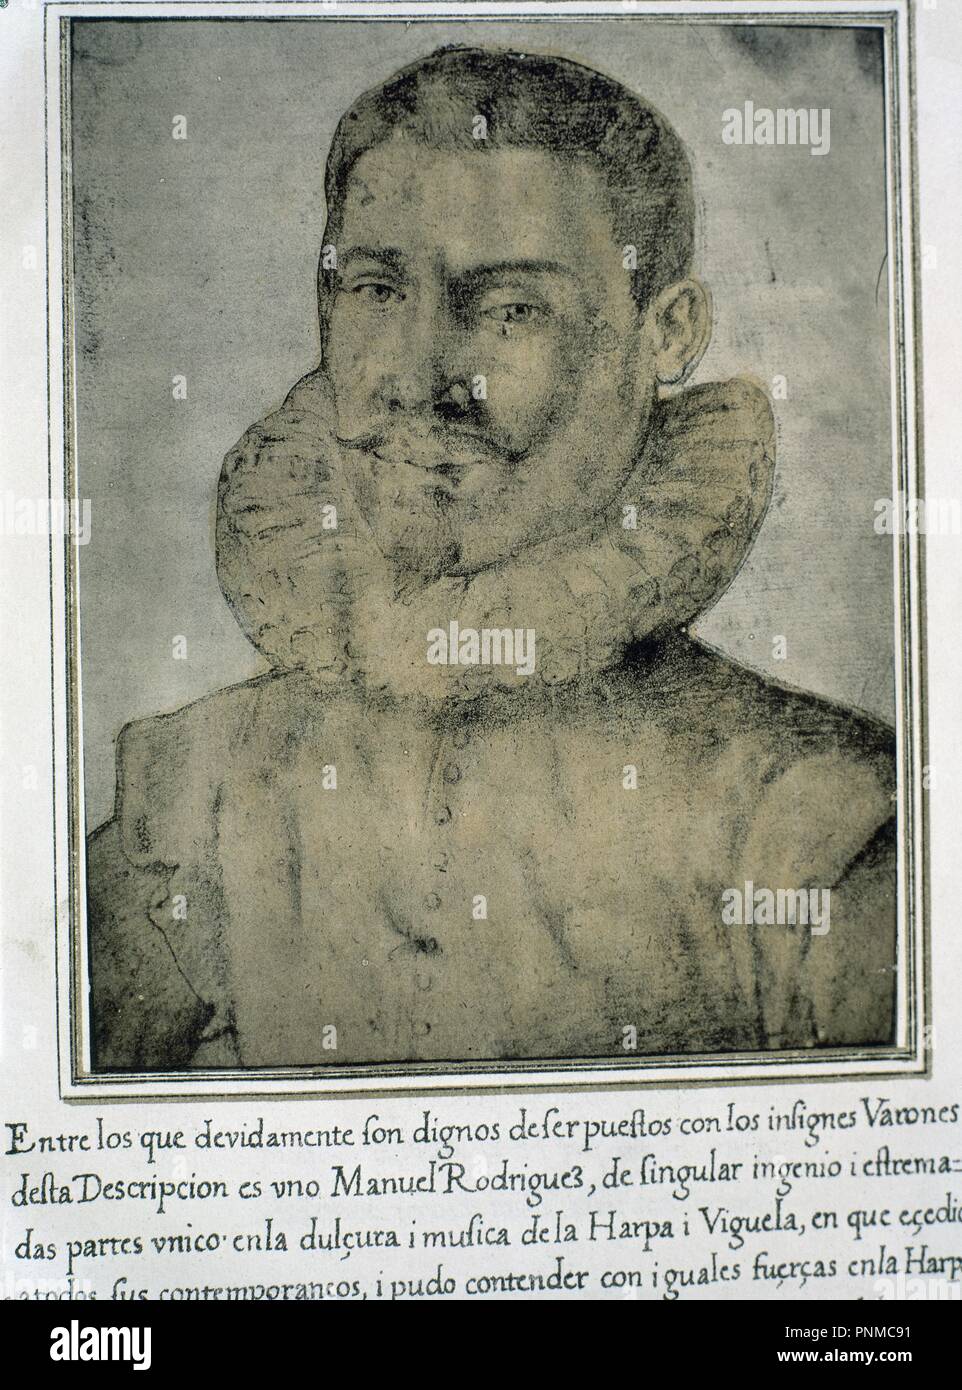 MANUEL RODRIGUEZ - LIBRO DE RETRATOS DE ILUSTRES Y MEMORABLES VARONES - 1599. Author: PACHECO, FRANCISCO. Location: BIBLIOTECA NACIONAL-COLECCION. MADRID. SPAIN. Stock Photo